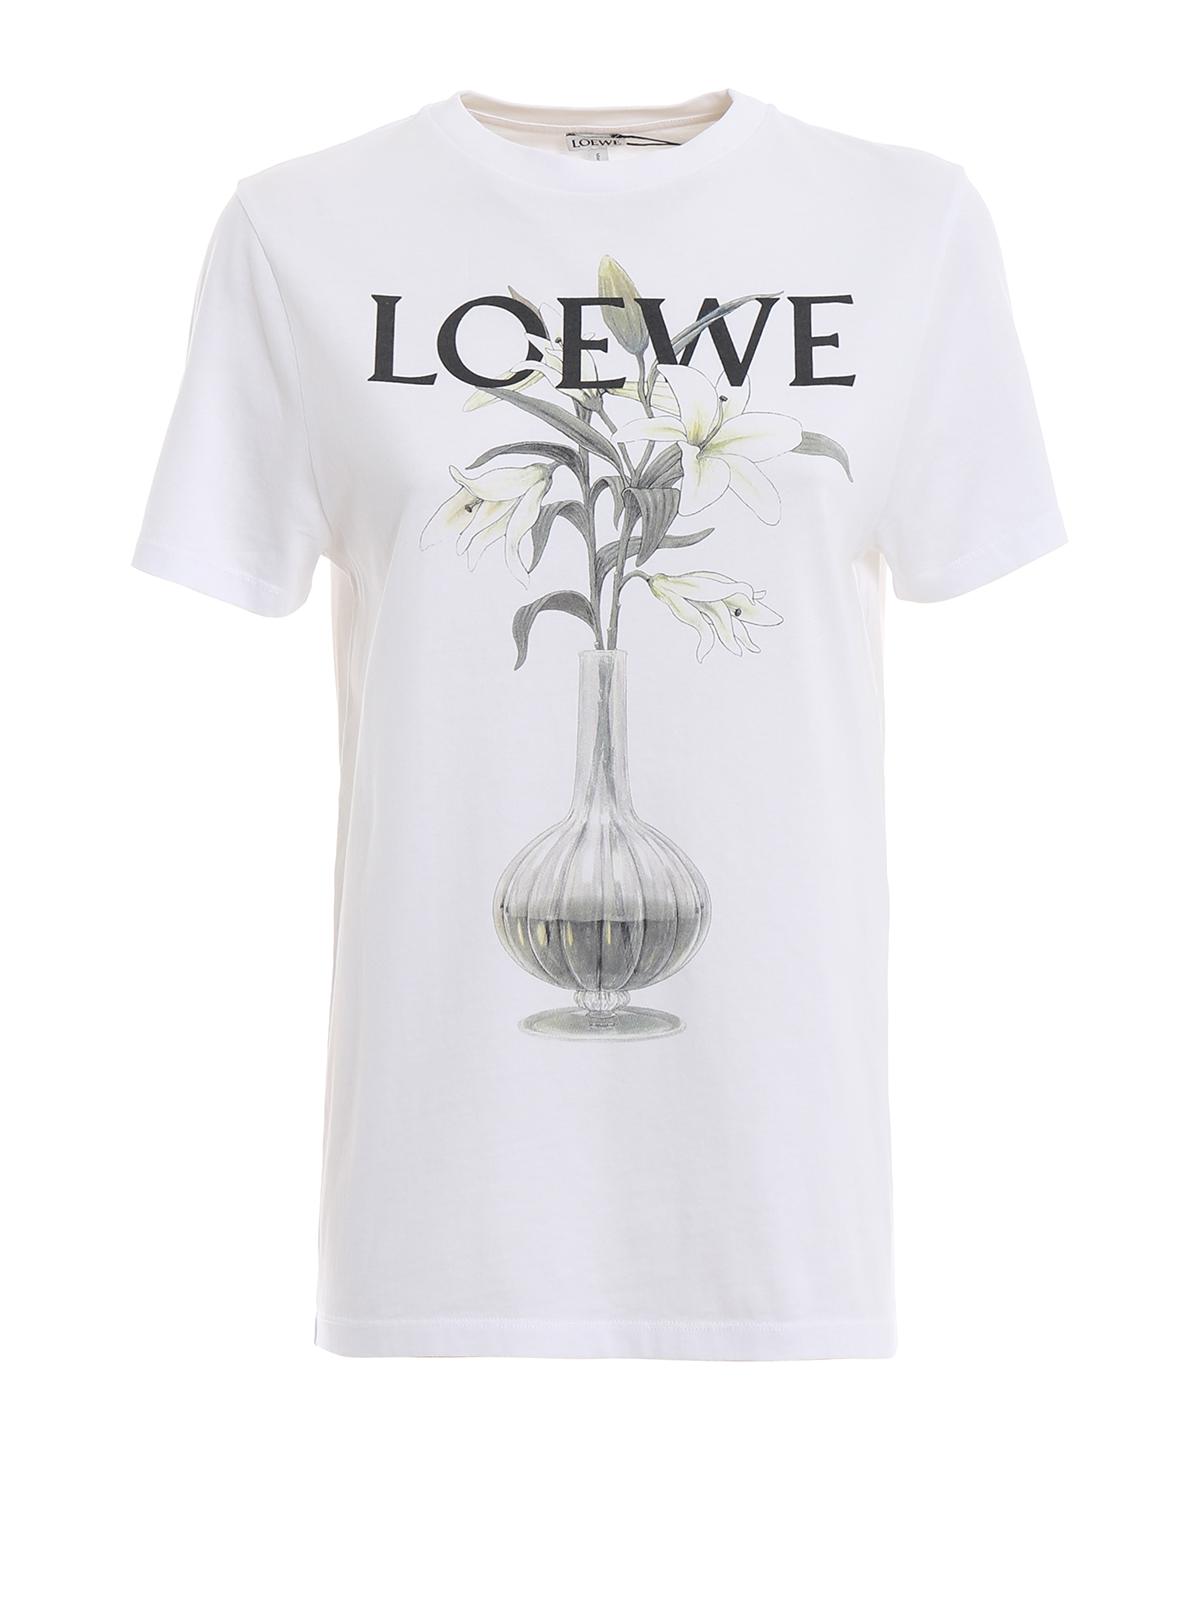 Loewe Logo Tee Online, 59% OFF | www.groupgolden.com